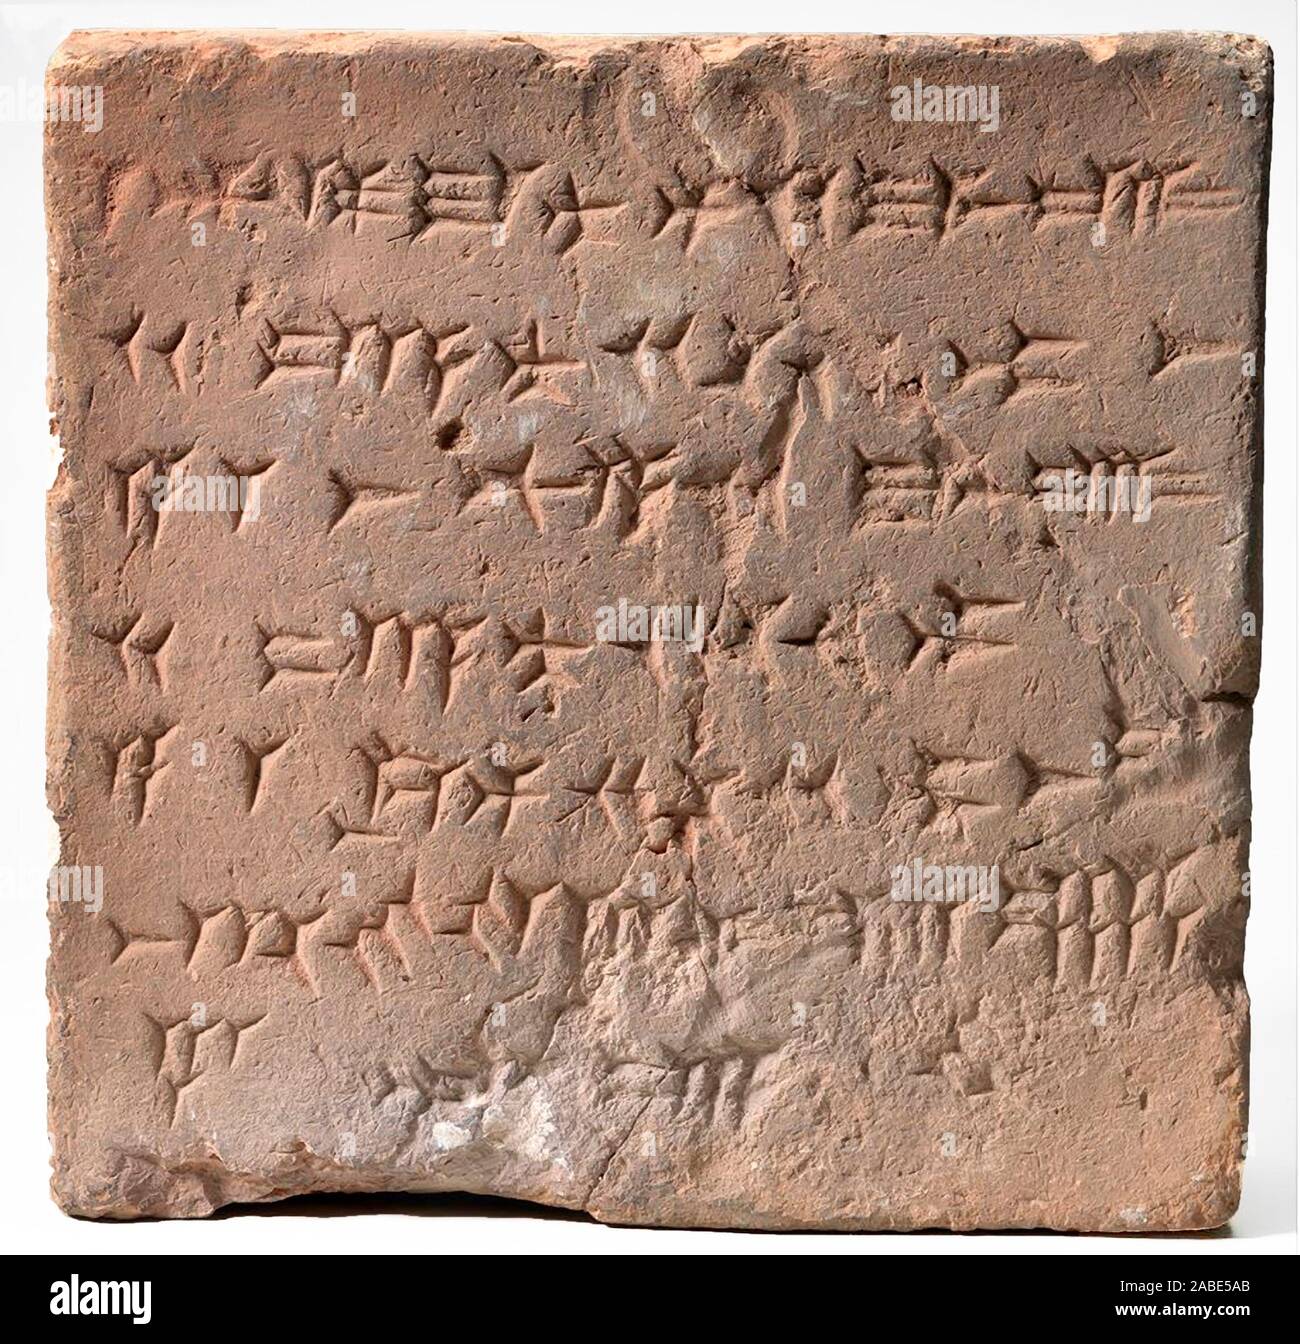 6521. Mattone di Clay inscritto in lettere cuneiformi prizing re Shalmaneser, re di Assiria. Dalla ziggurat di Kalhu, Mesopotamia. Foto Stock